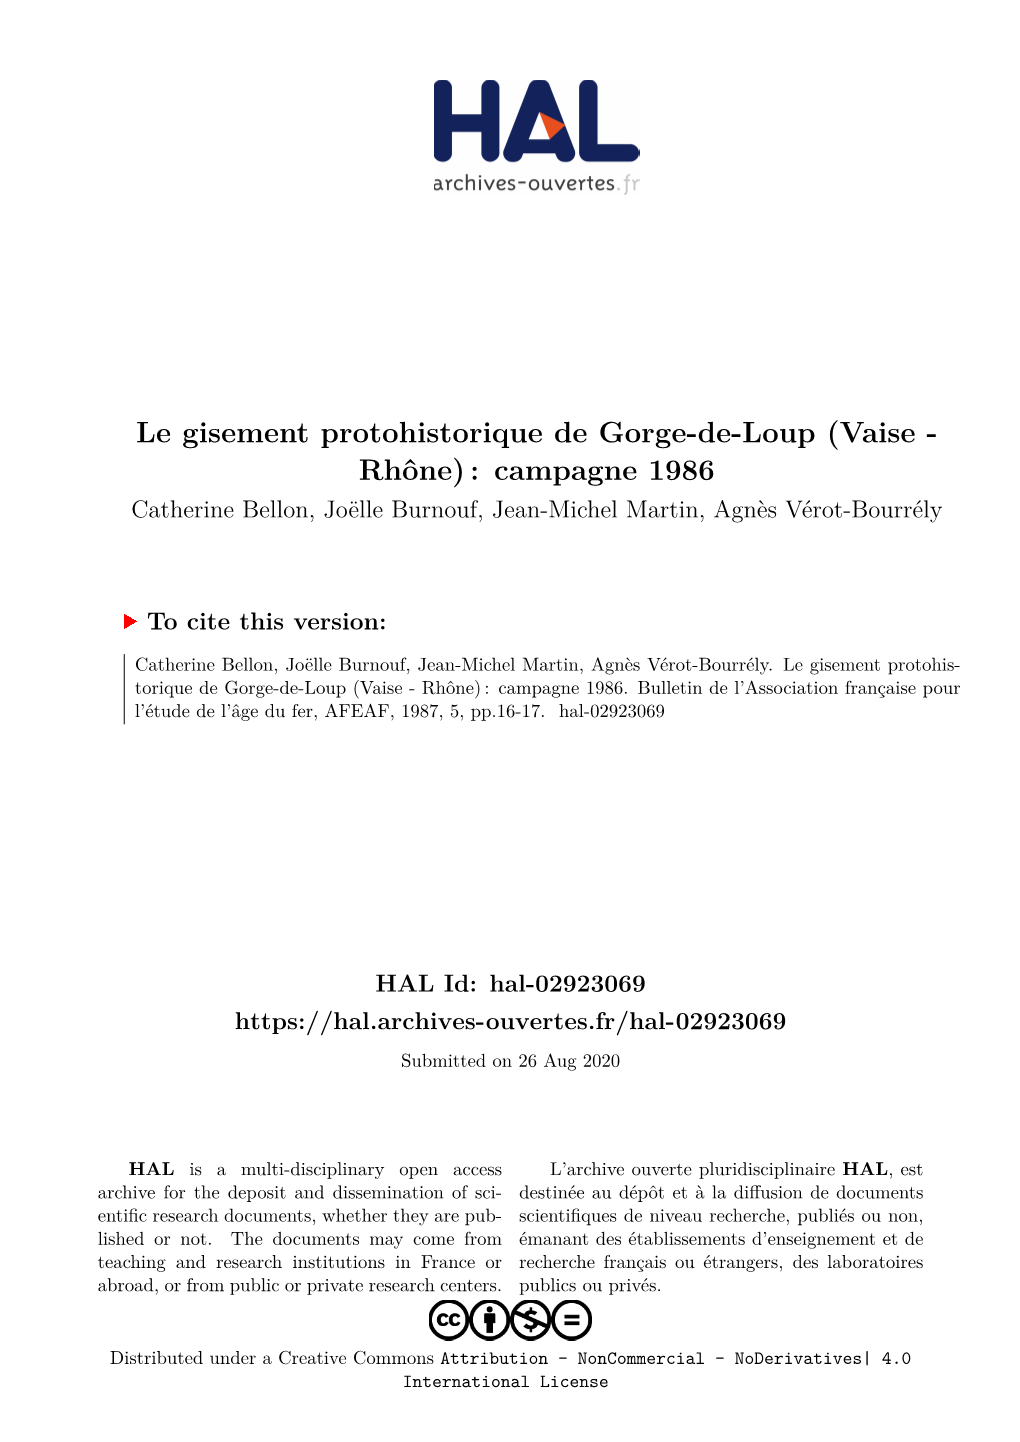 Le Gisement Protohistorique De Gorge-De-Loup (Vaise - Rhône) : Campagne 1986 Catherine Bellon, Joëlle Burnouf, Jean-Michel Martin, Agnès Vérot-Bourrély